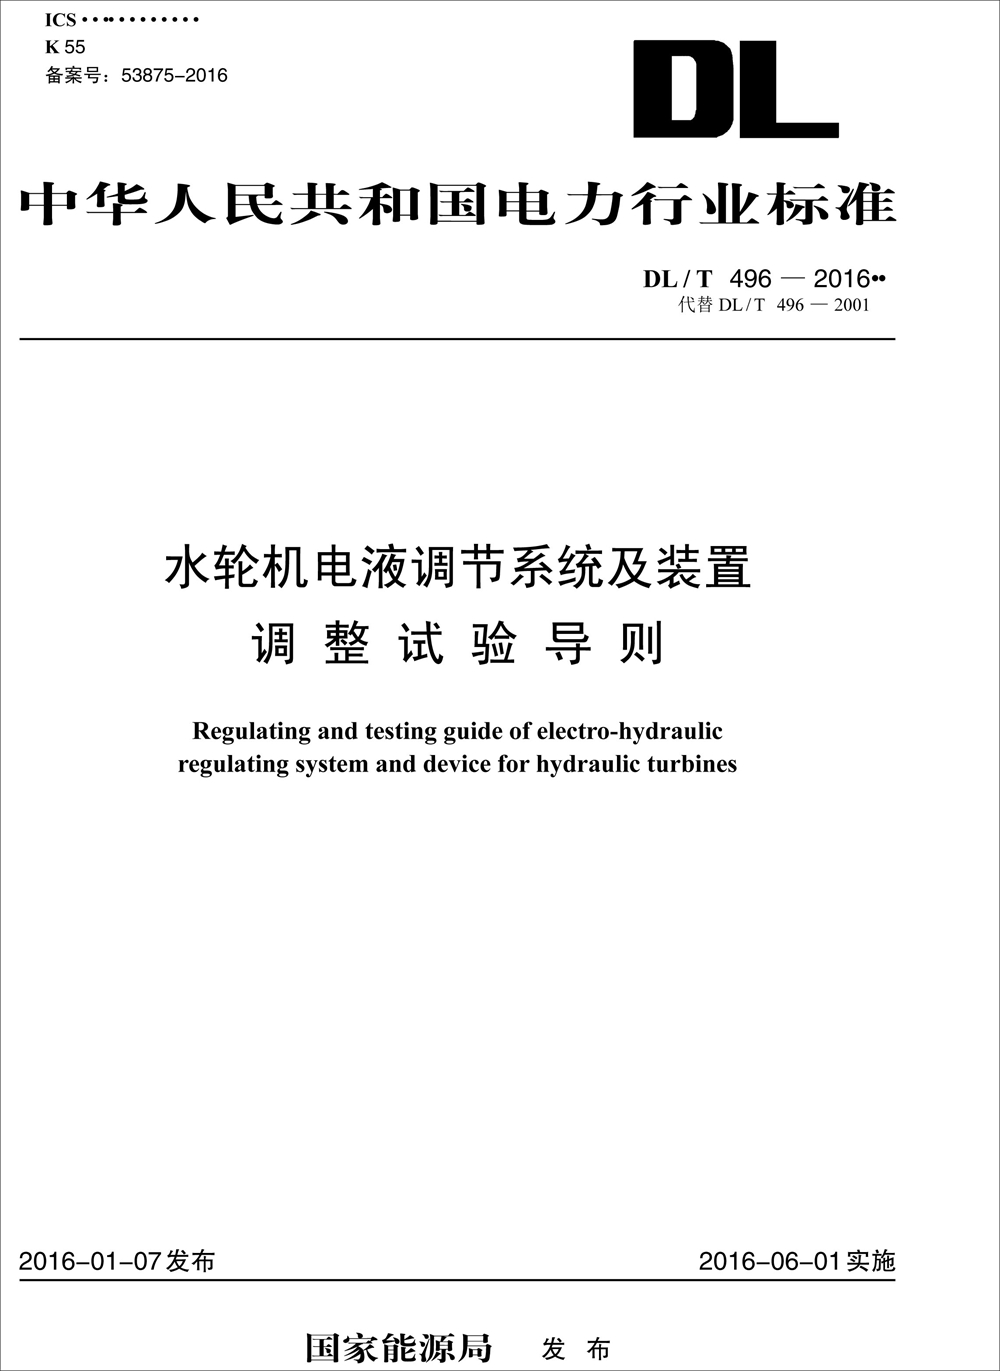 中华人民共和国电力行业标准（DL/T 496-2016）：水轮机电液调节系统及装置调整试验导则 kindle格式下载